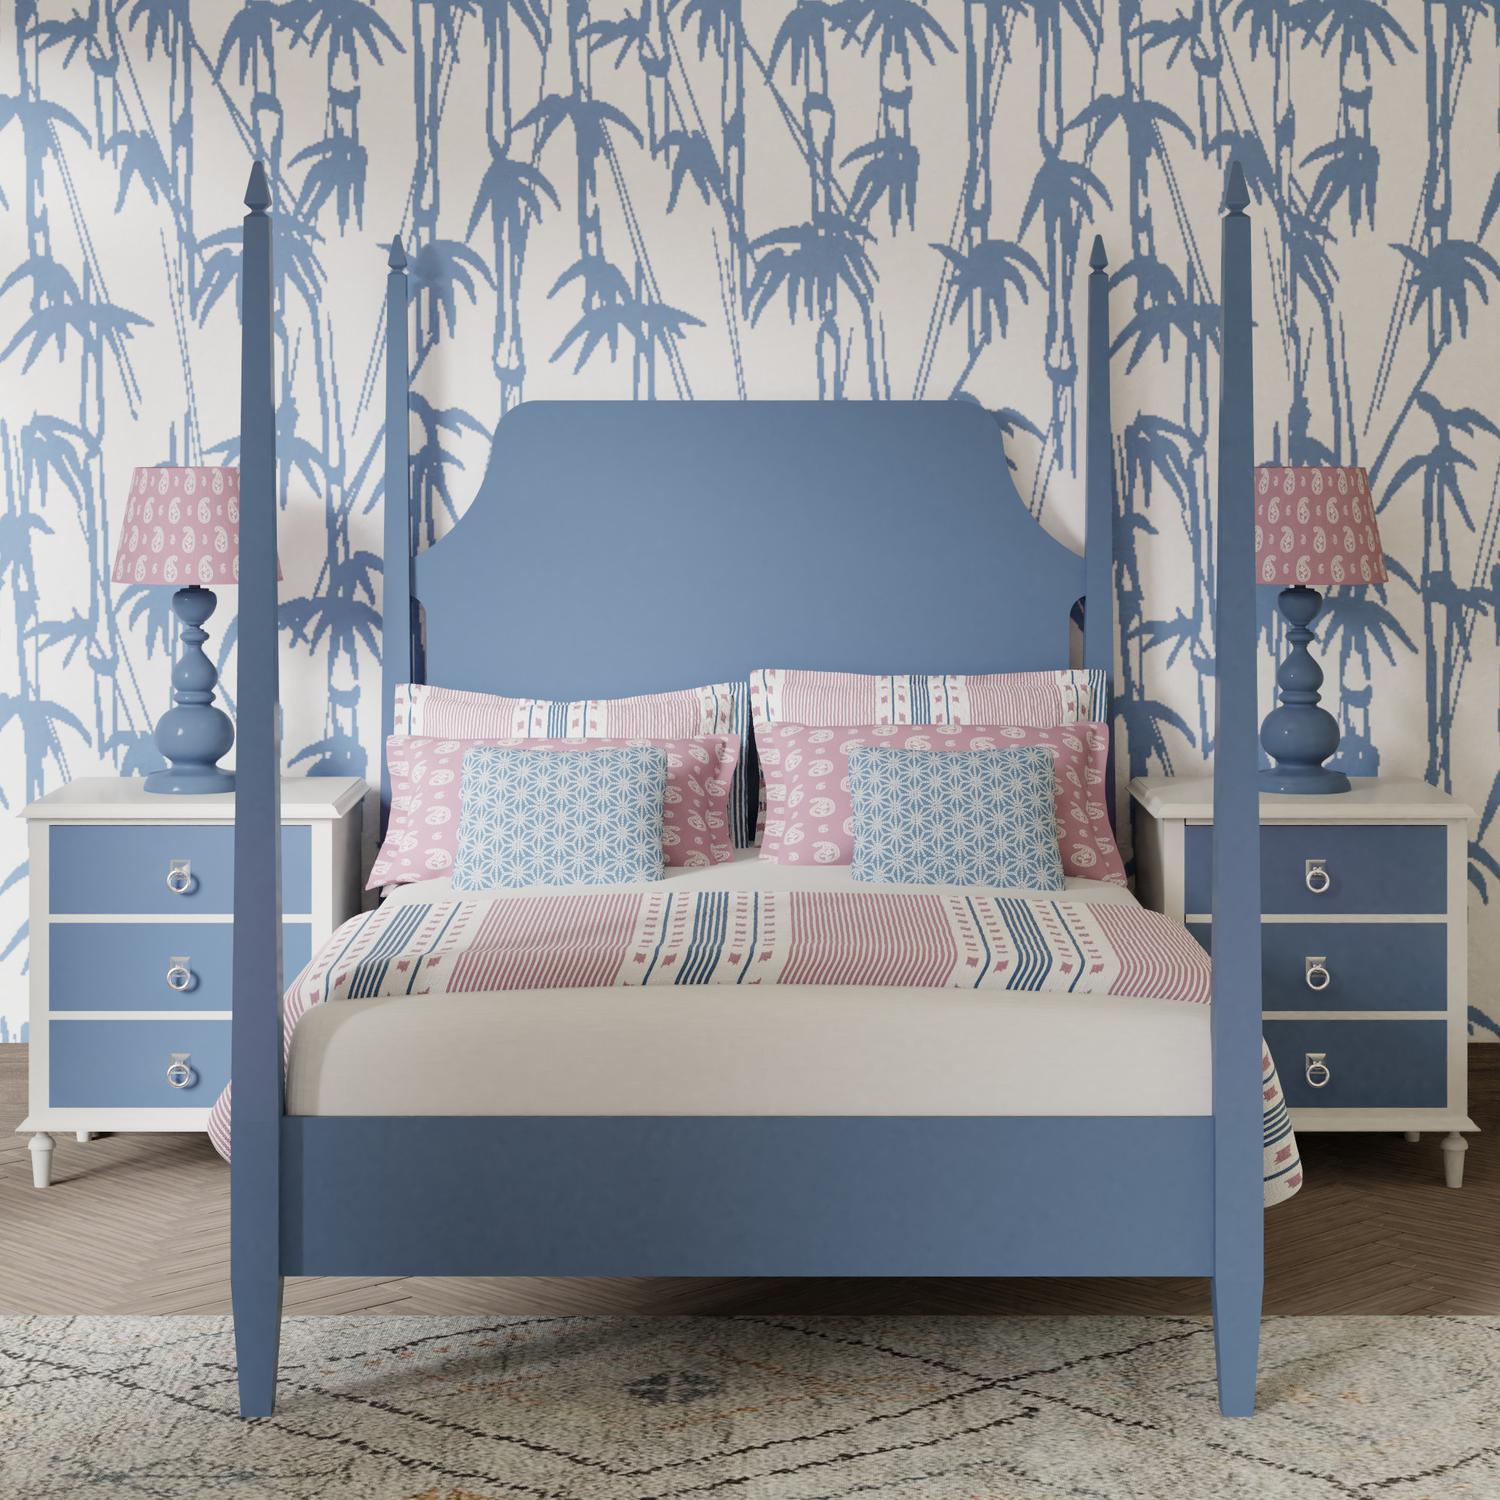 Turner wooden bed - Image blue bedroom